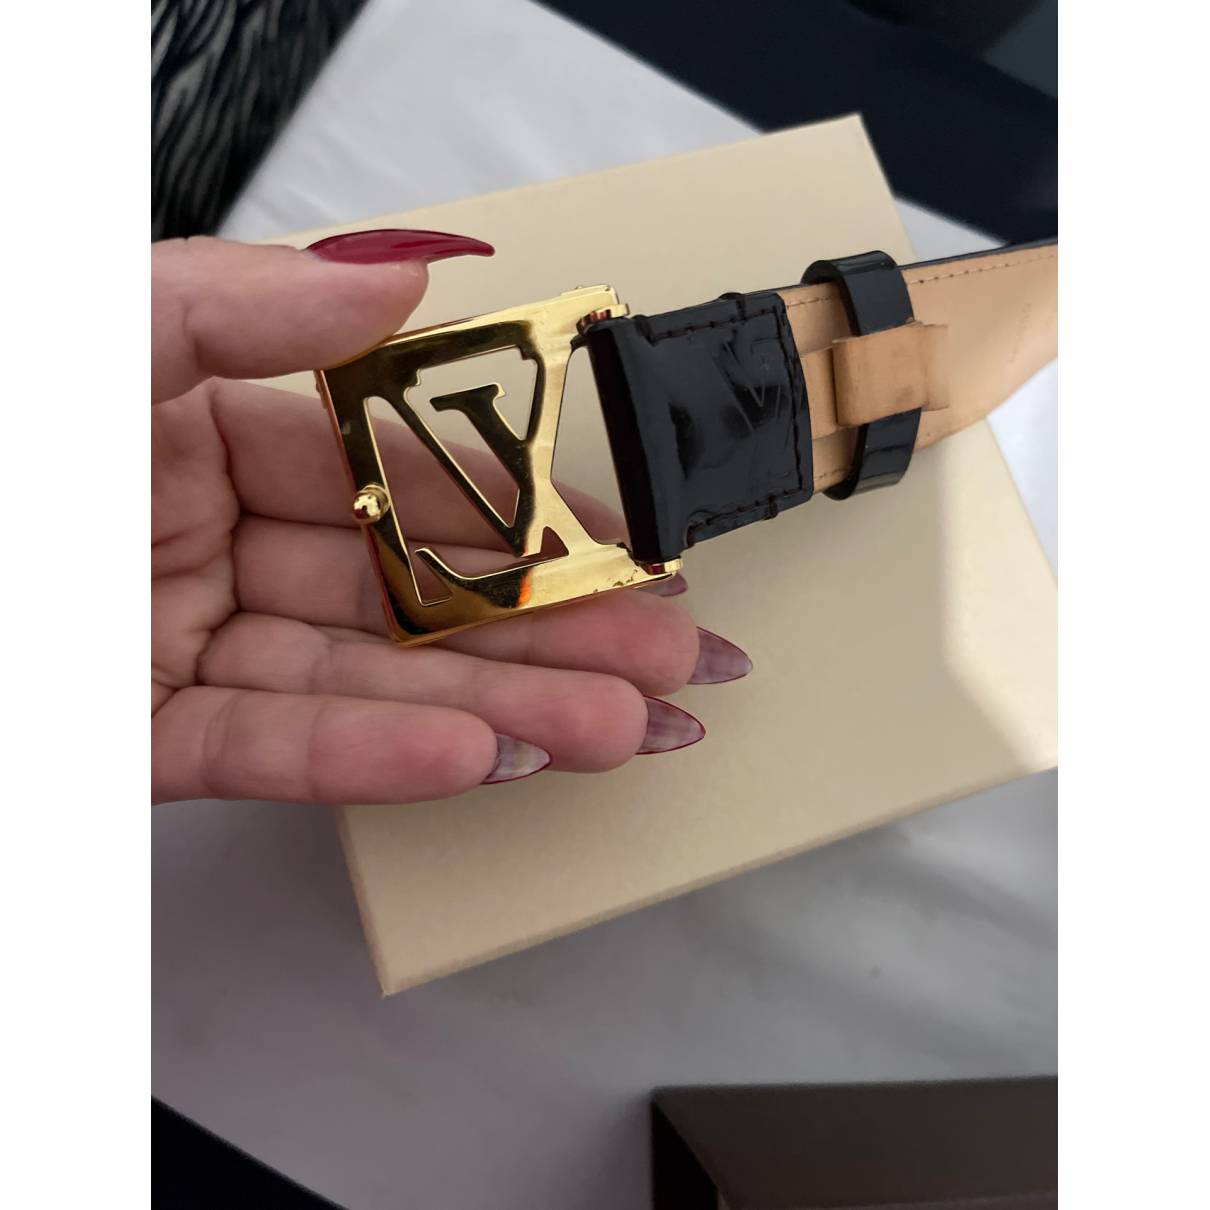 cintura originale Louis Vuitton di seconda mano per 80 EUR su